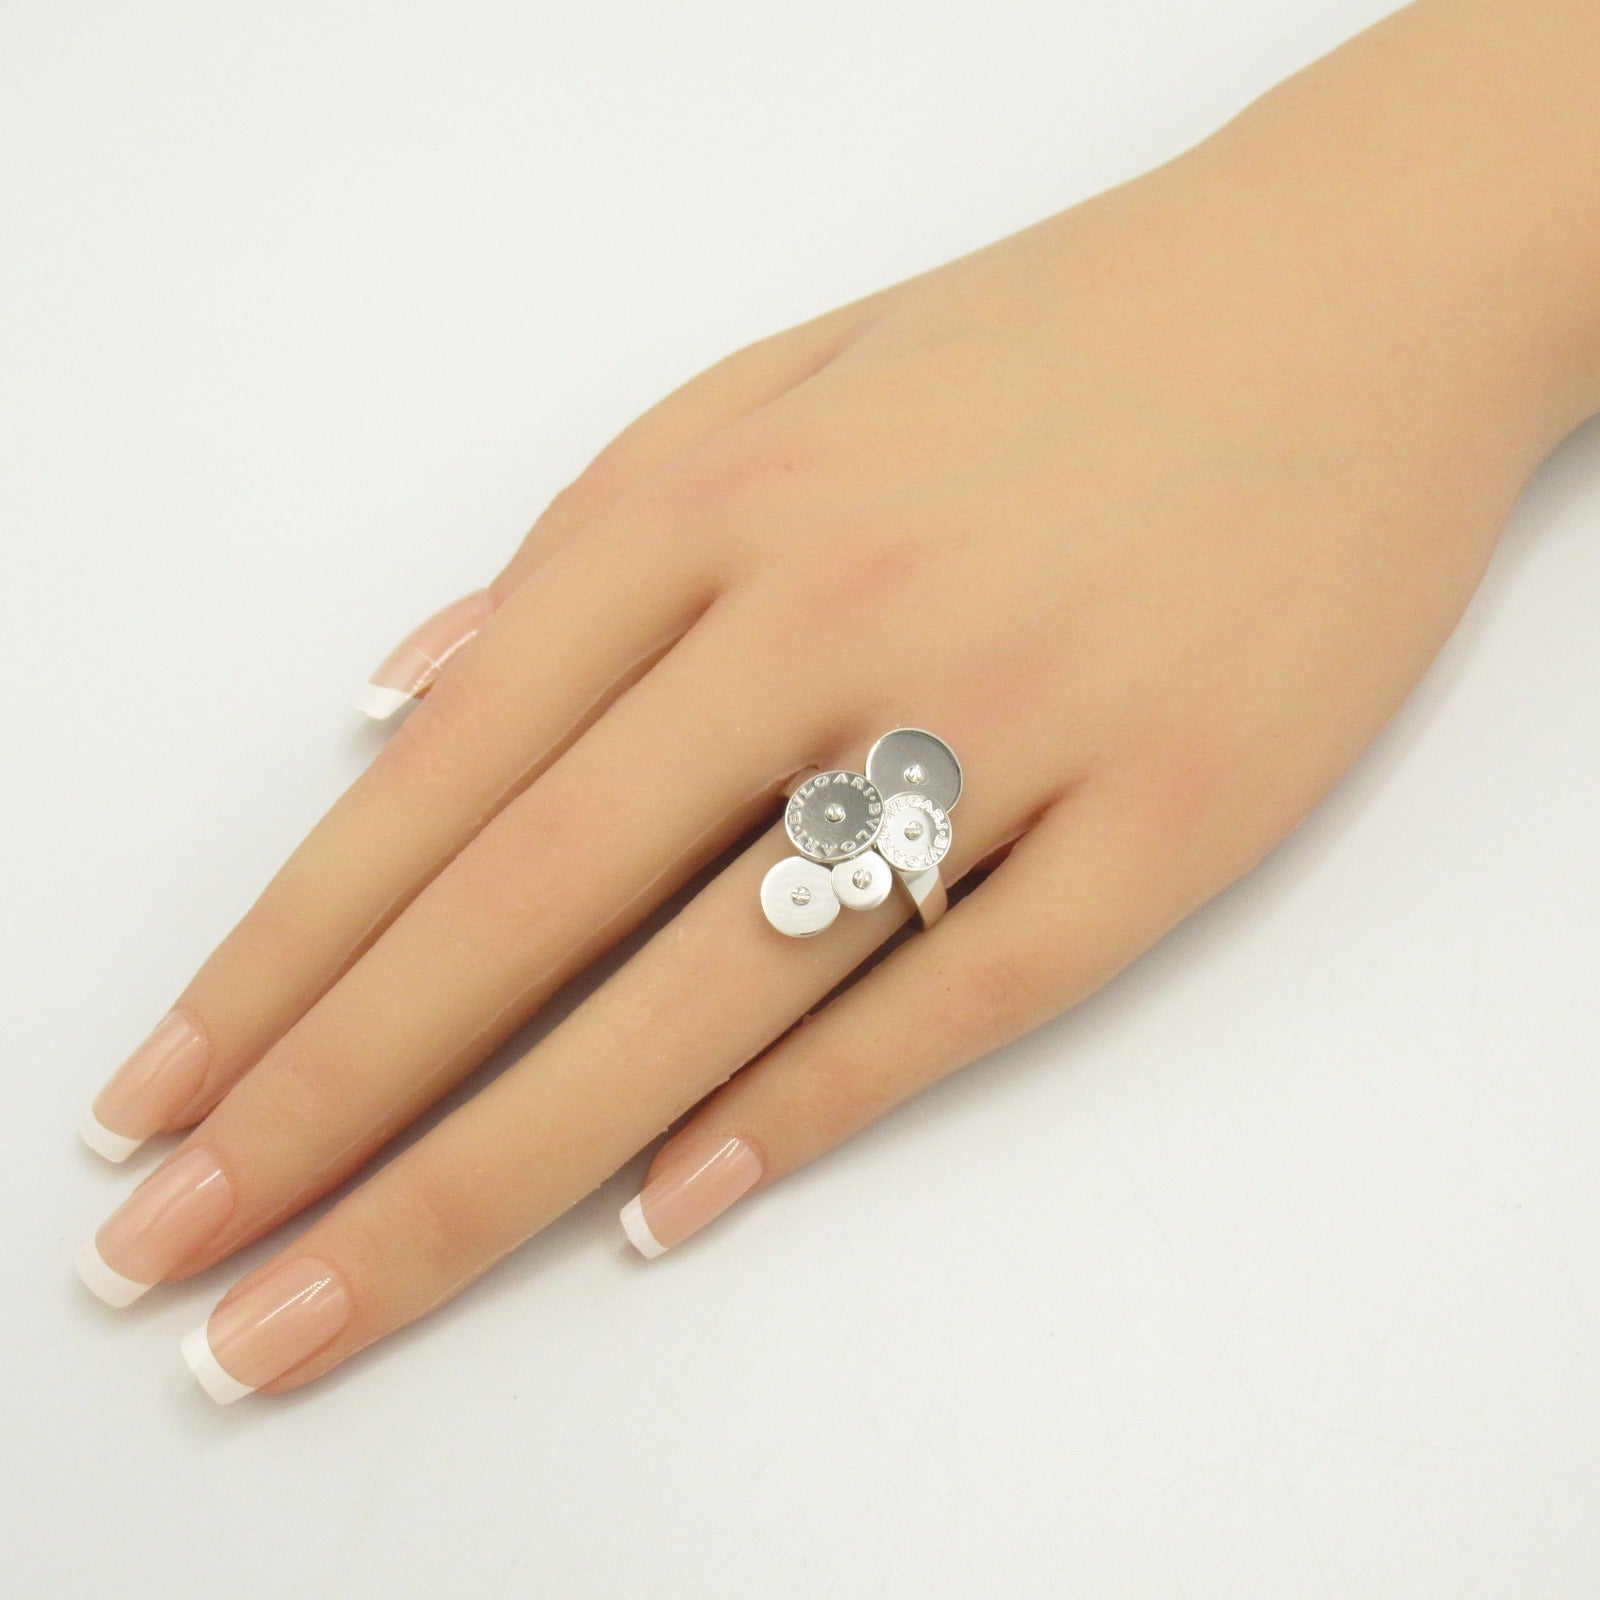 Bulgari BVLGARI Cyc Ring Ring and Ring Jewelry K18WG (White G)  Silver